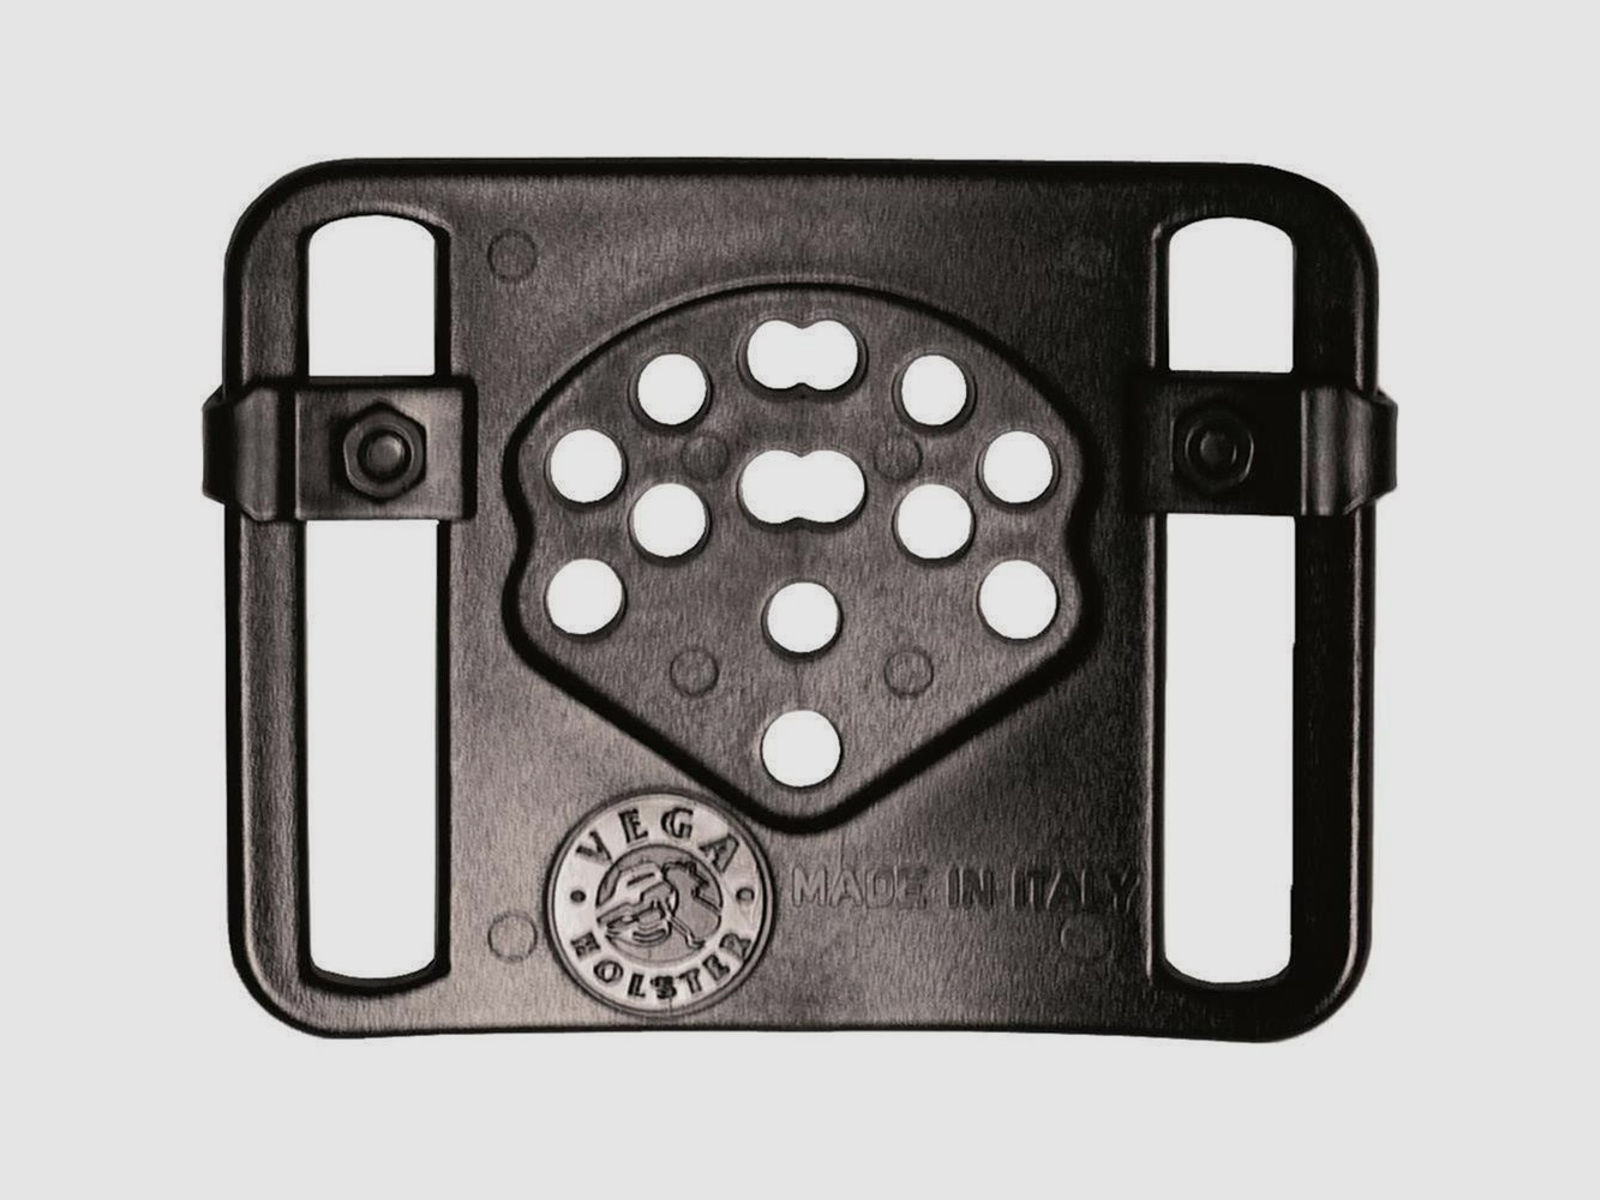 Polymerholster “RESCUE” mit Sicherung Walther P99 Linkshänder